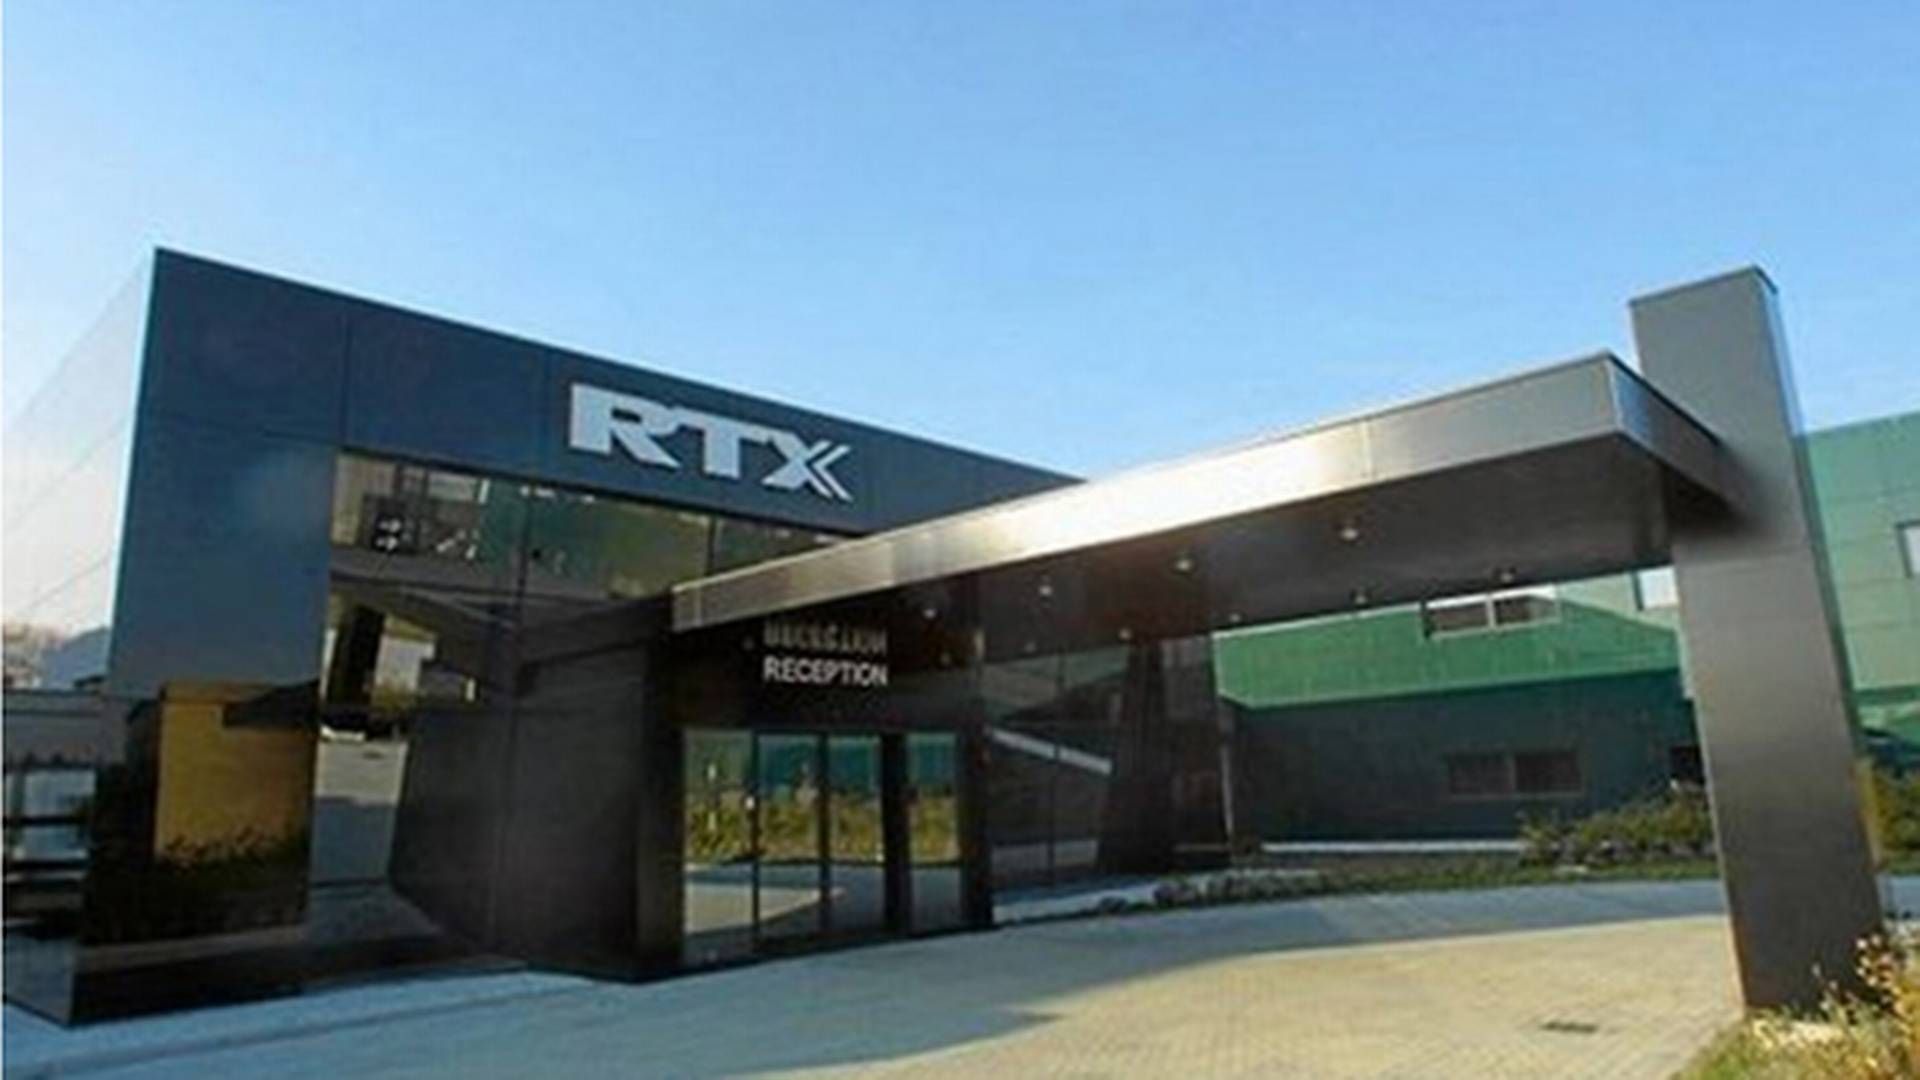 RTX indgår samarbejde med global spiller på healthcare-markedet. | Foto: Rtx/pr